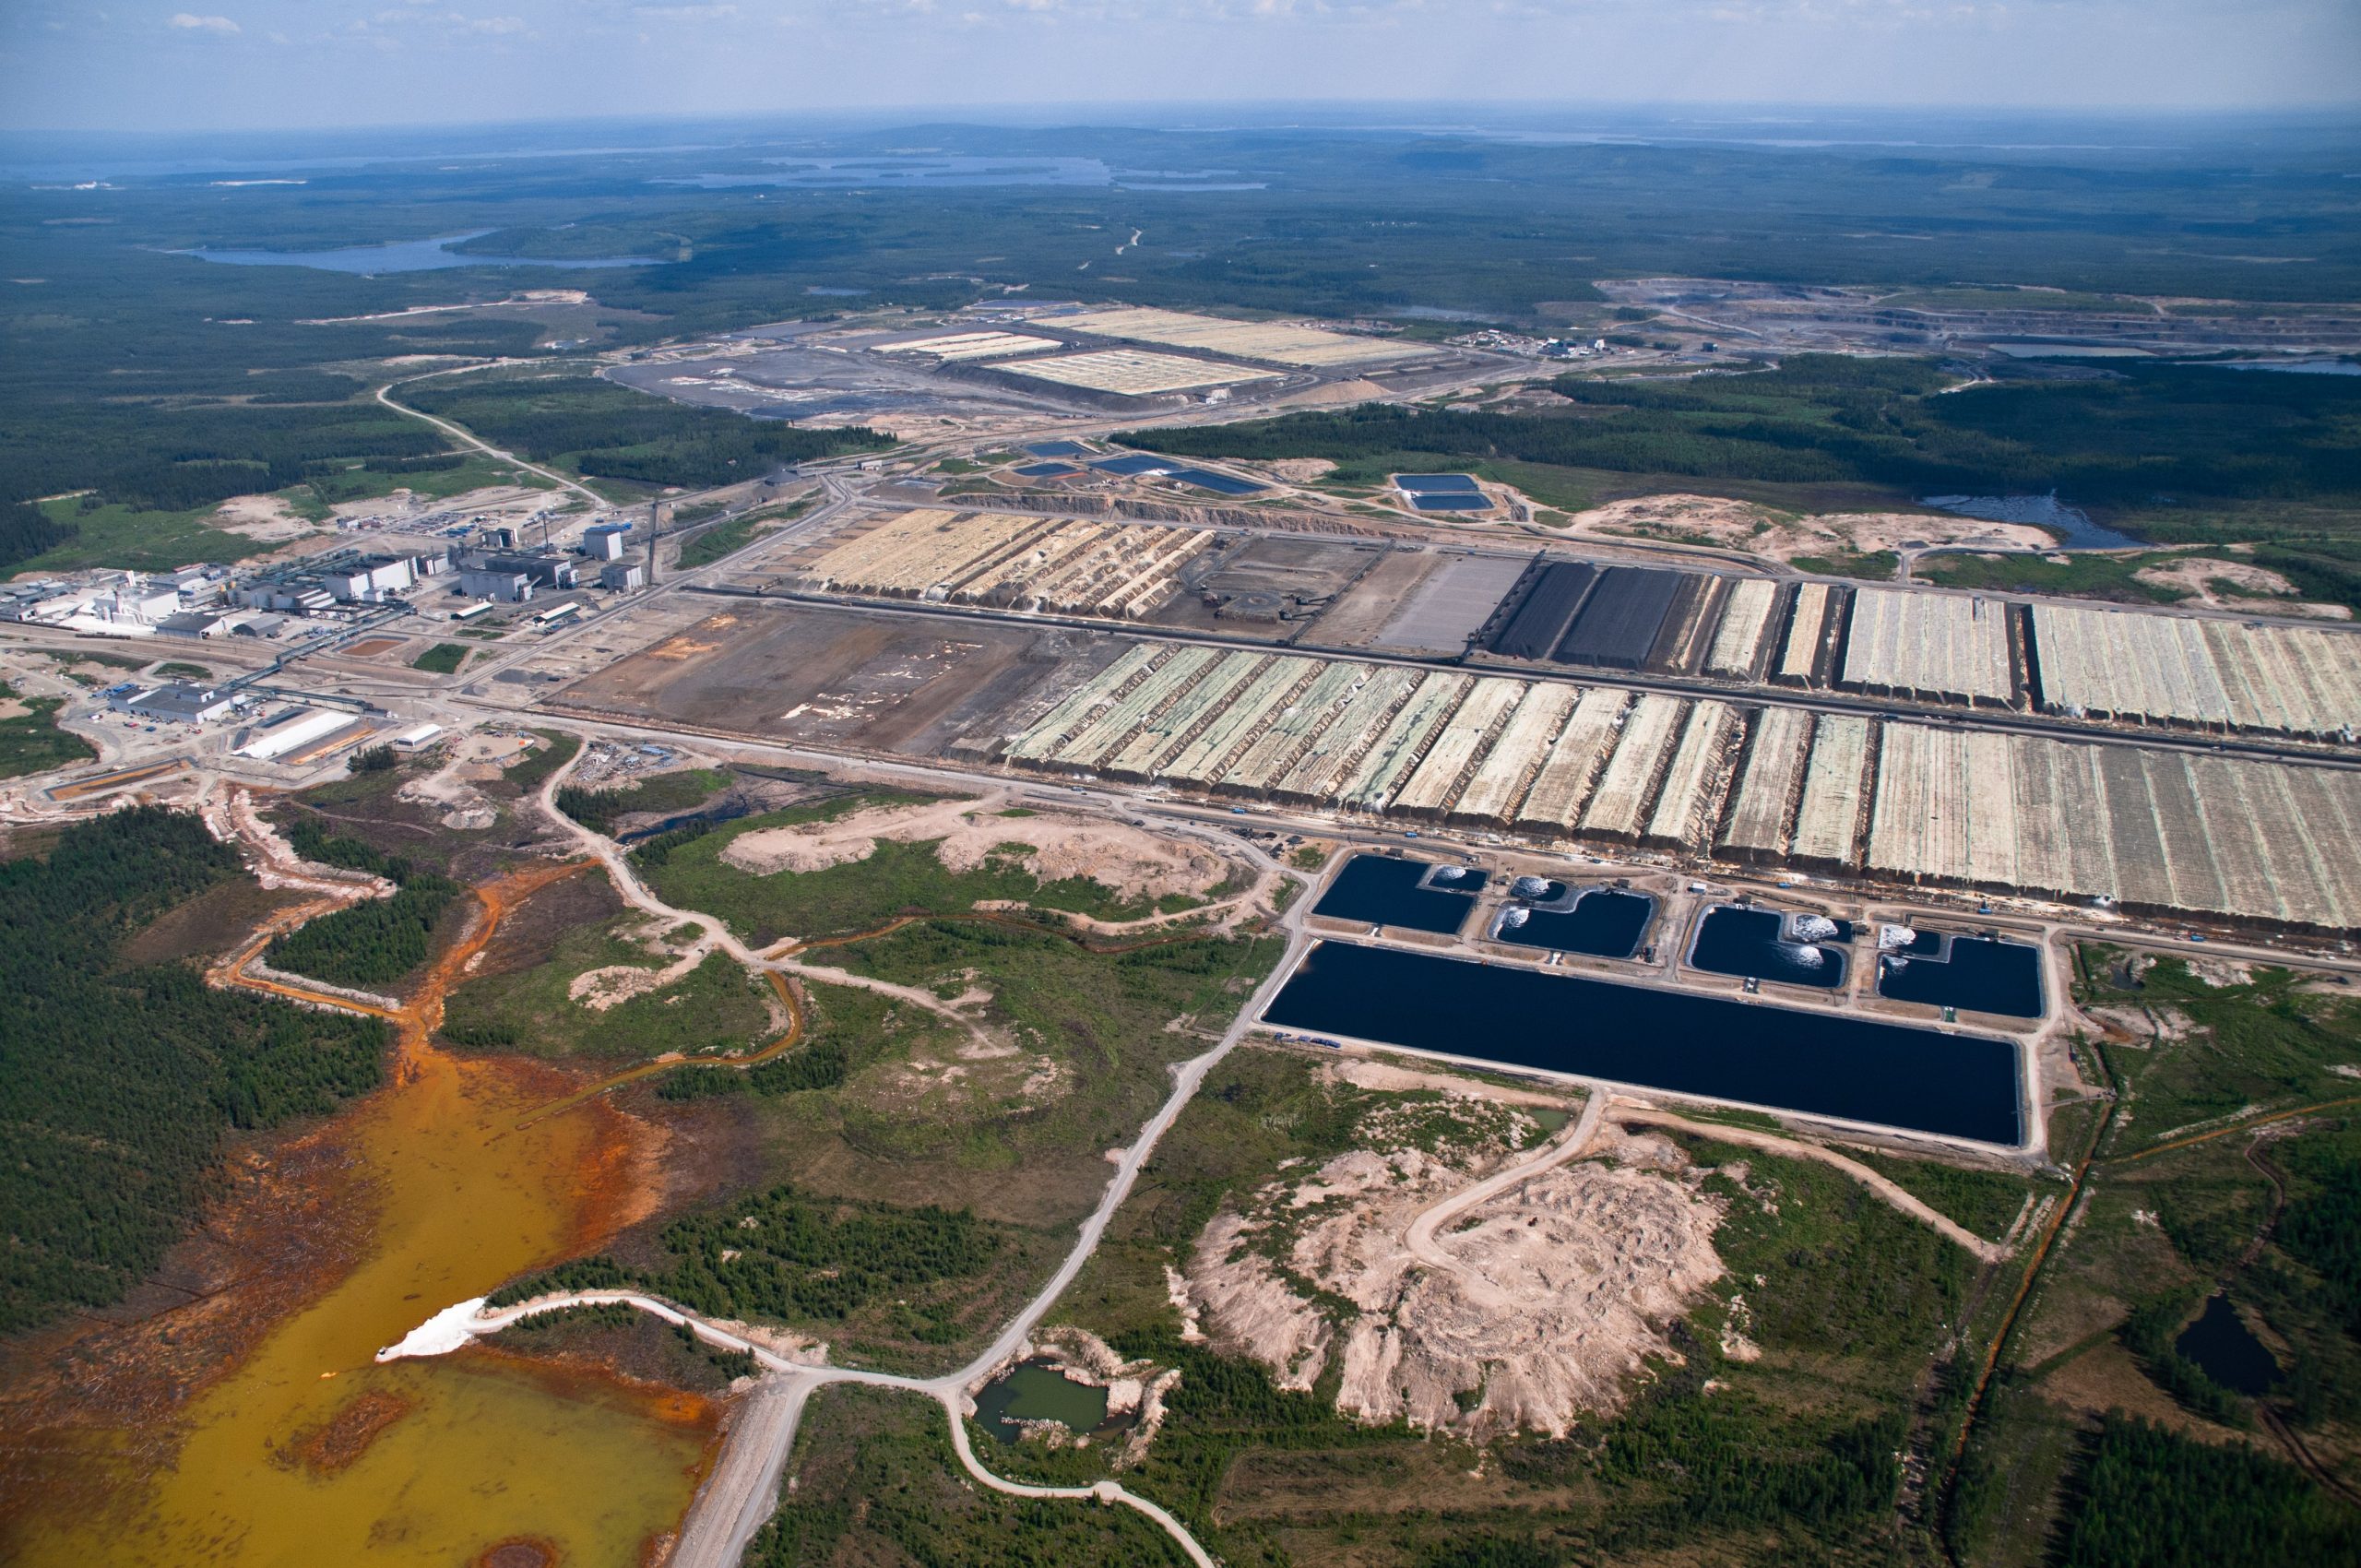 Terrafamen ympäristölupapäätös paljastaa kaivossääntelyn hälyttävän tilan –  Suomen luonnonsuojeluliitto